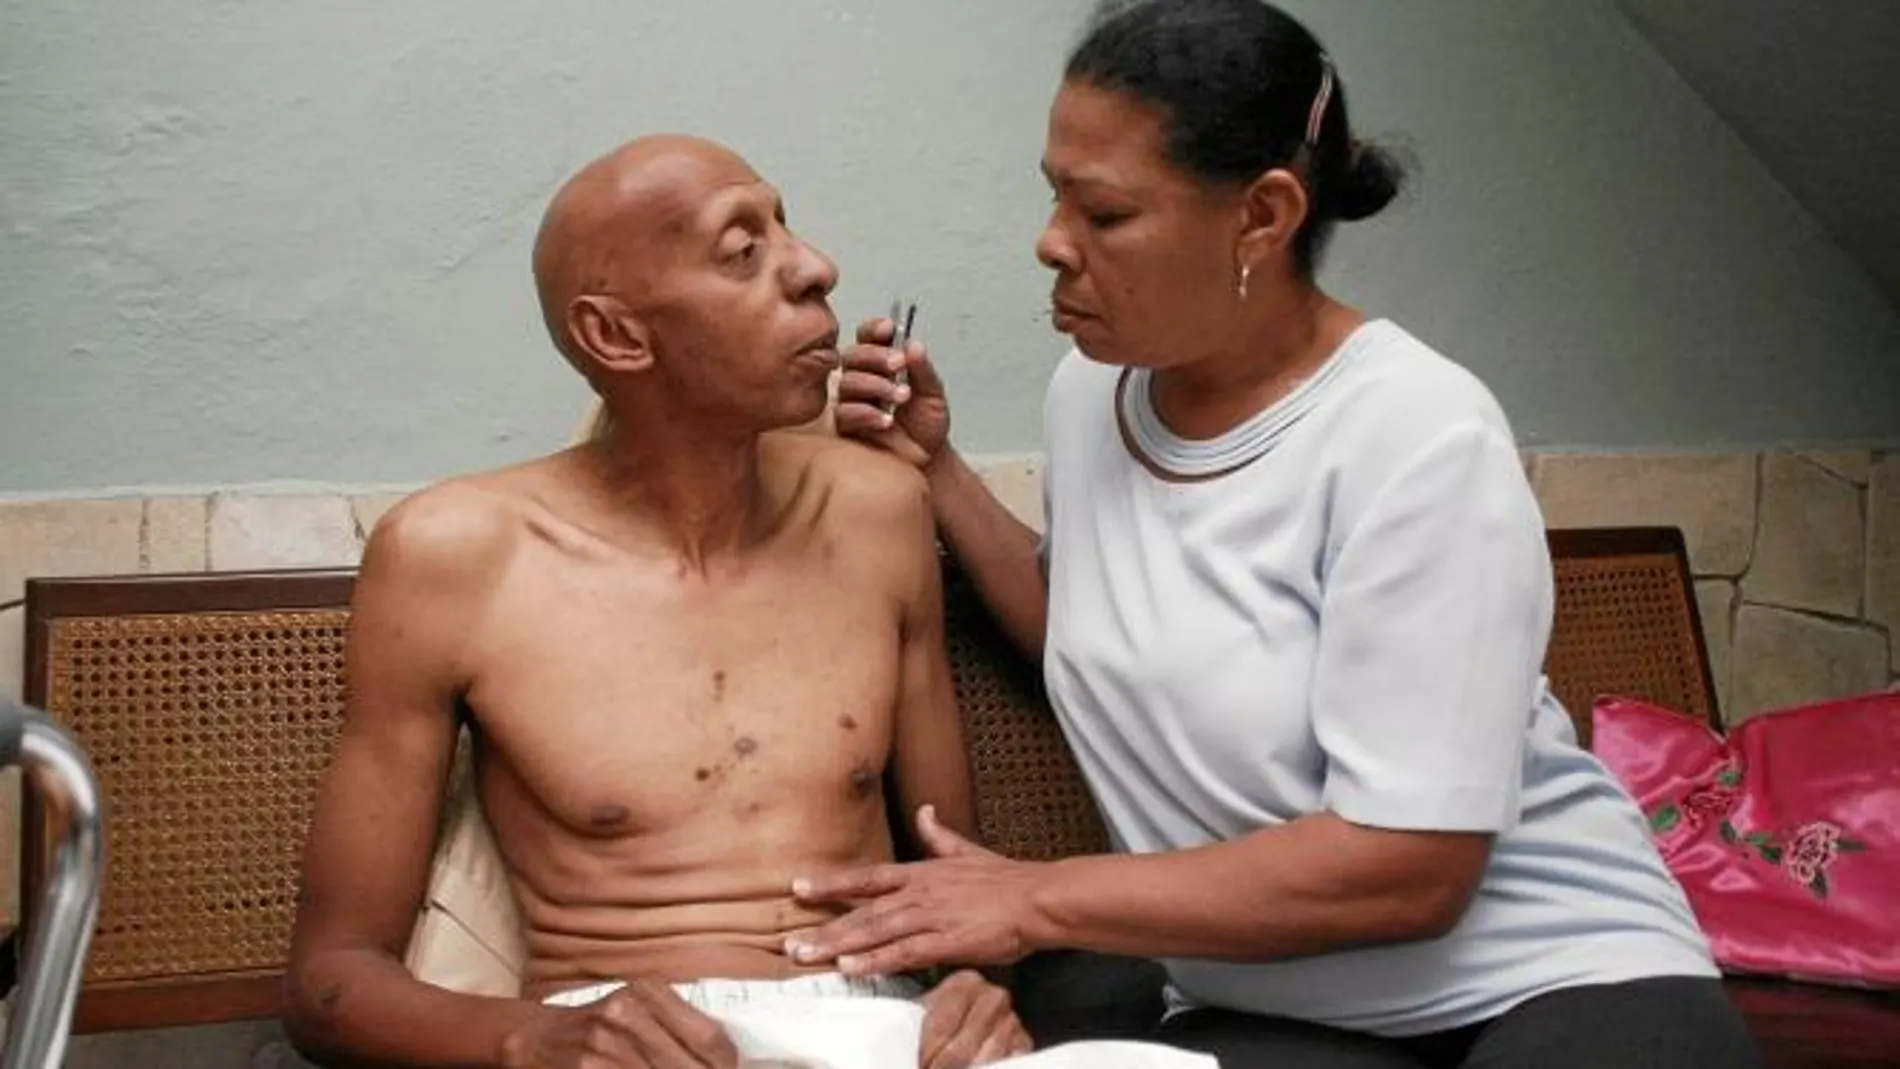 Guillermo Fariñas se convirtió en un símbolo contra la opresión castrista tras una dura huelga de hambre que casi le cuesta la vida. Ahora es uno de los firmantes de la carta